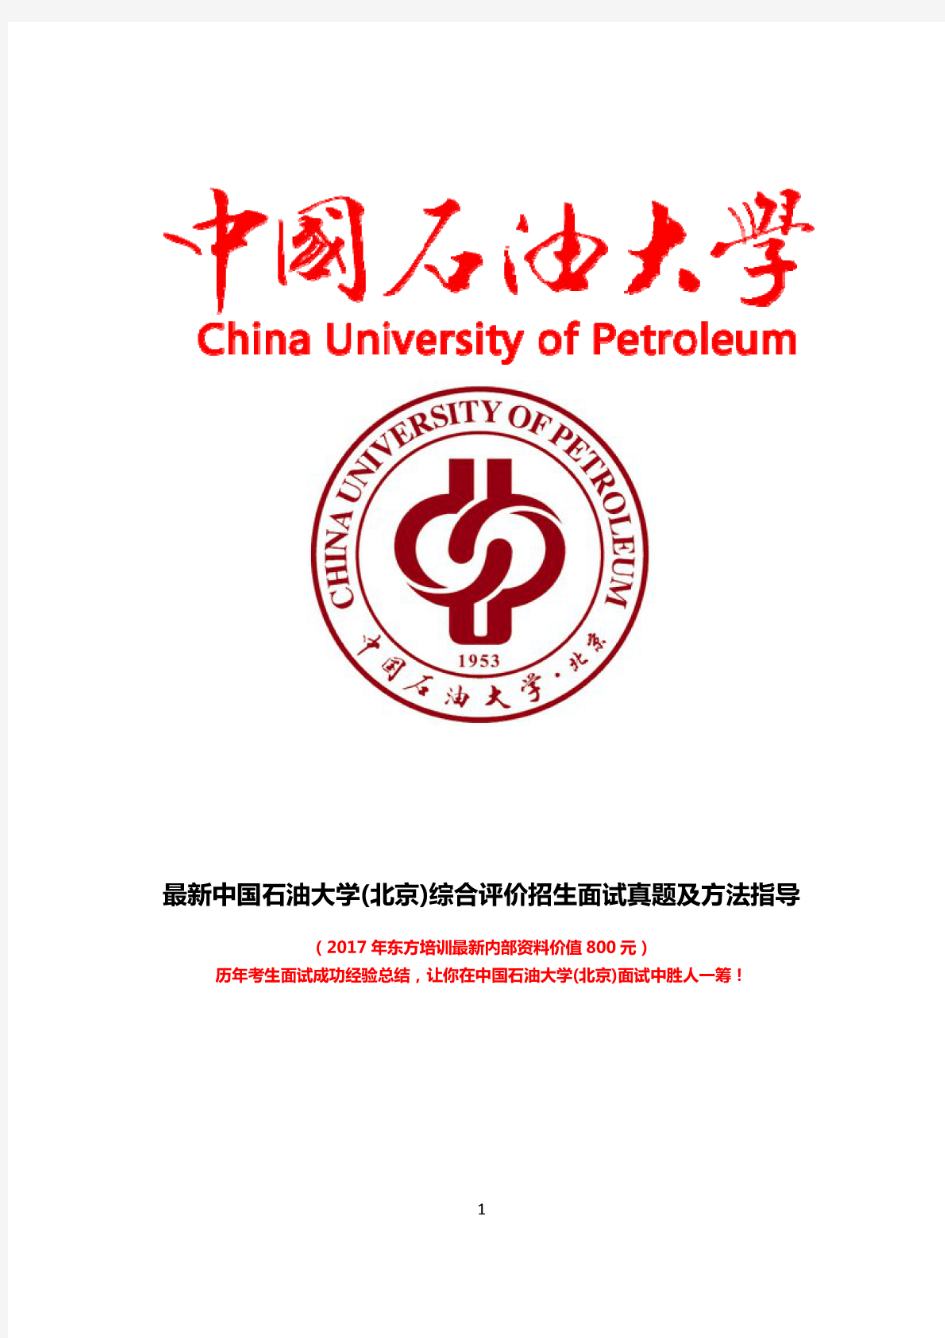 最新版中国石油大学(北京)综合素质测试面试题历年总结